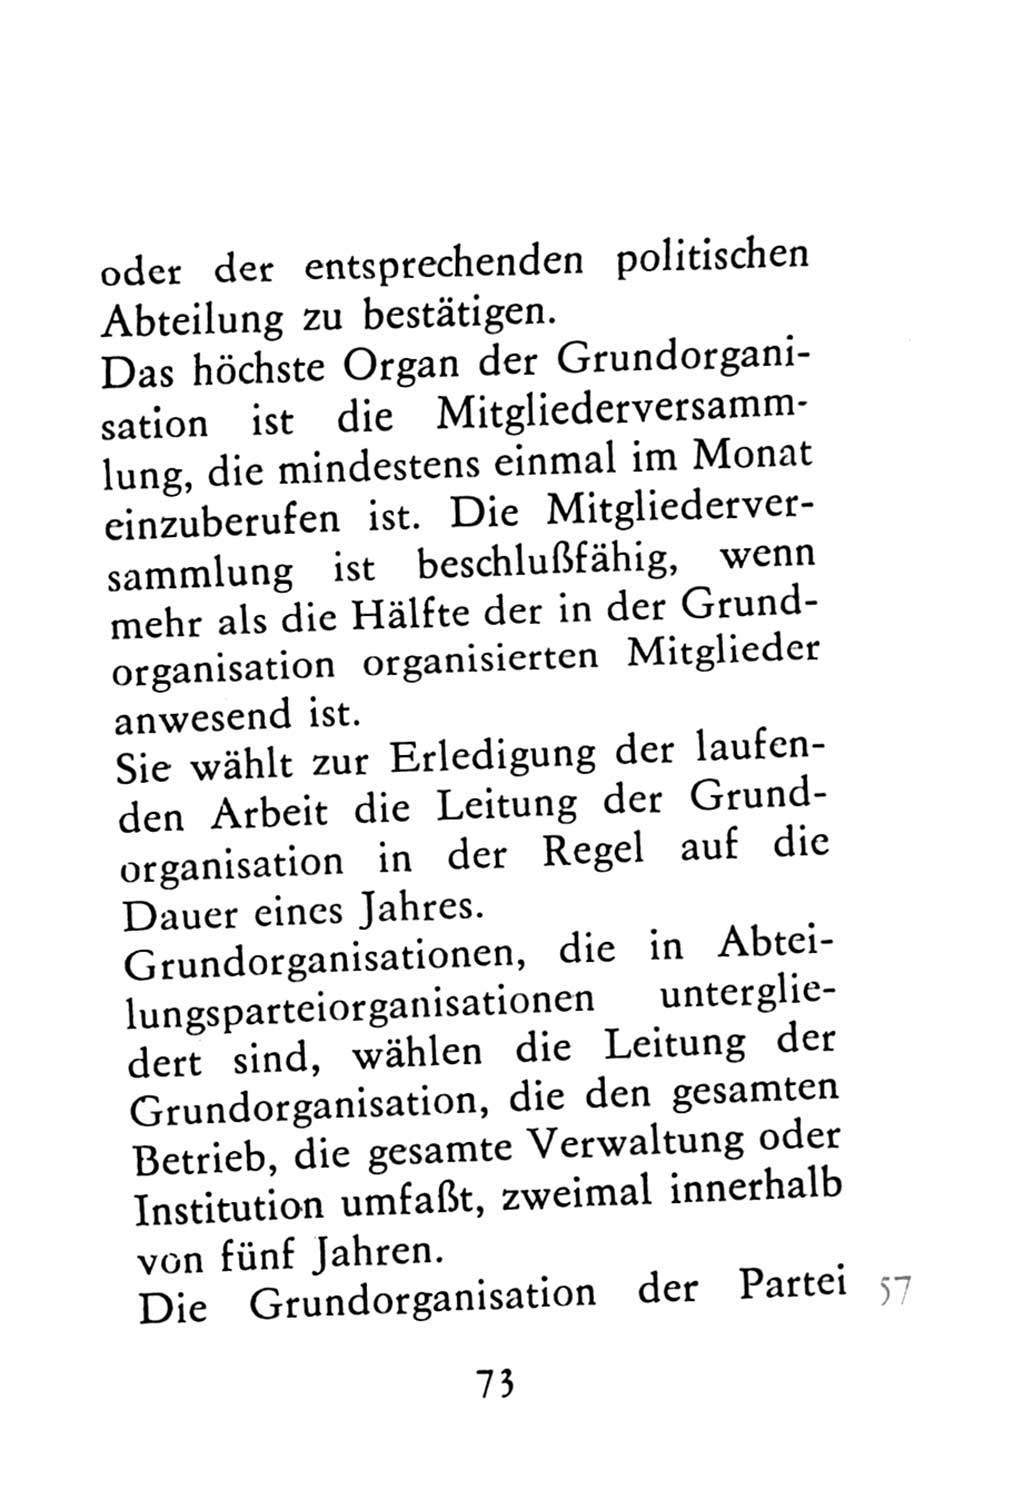 Statut der Sozialistischen Einheitspartei Deutschlands (SED) 1976, Seite 73 (St. SED DDR 1976, S. 73)